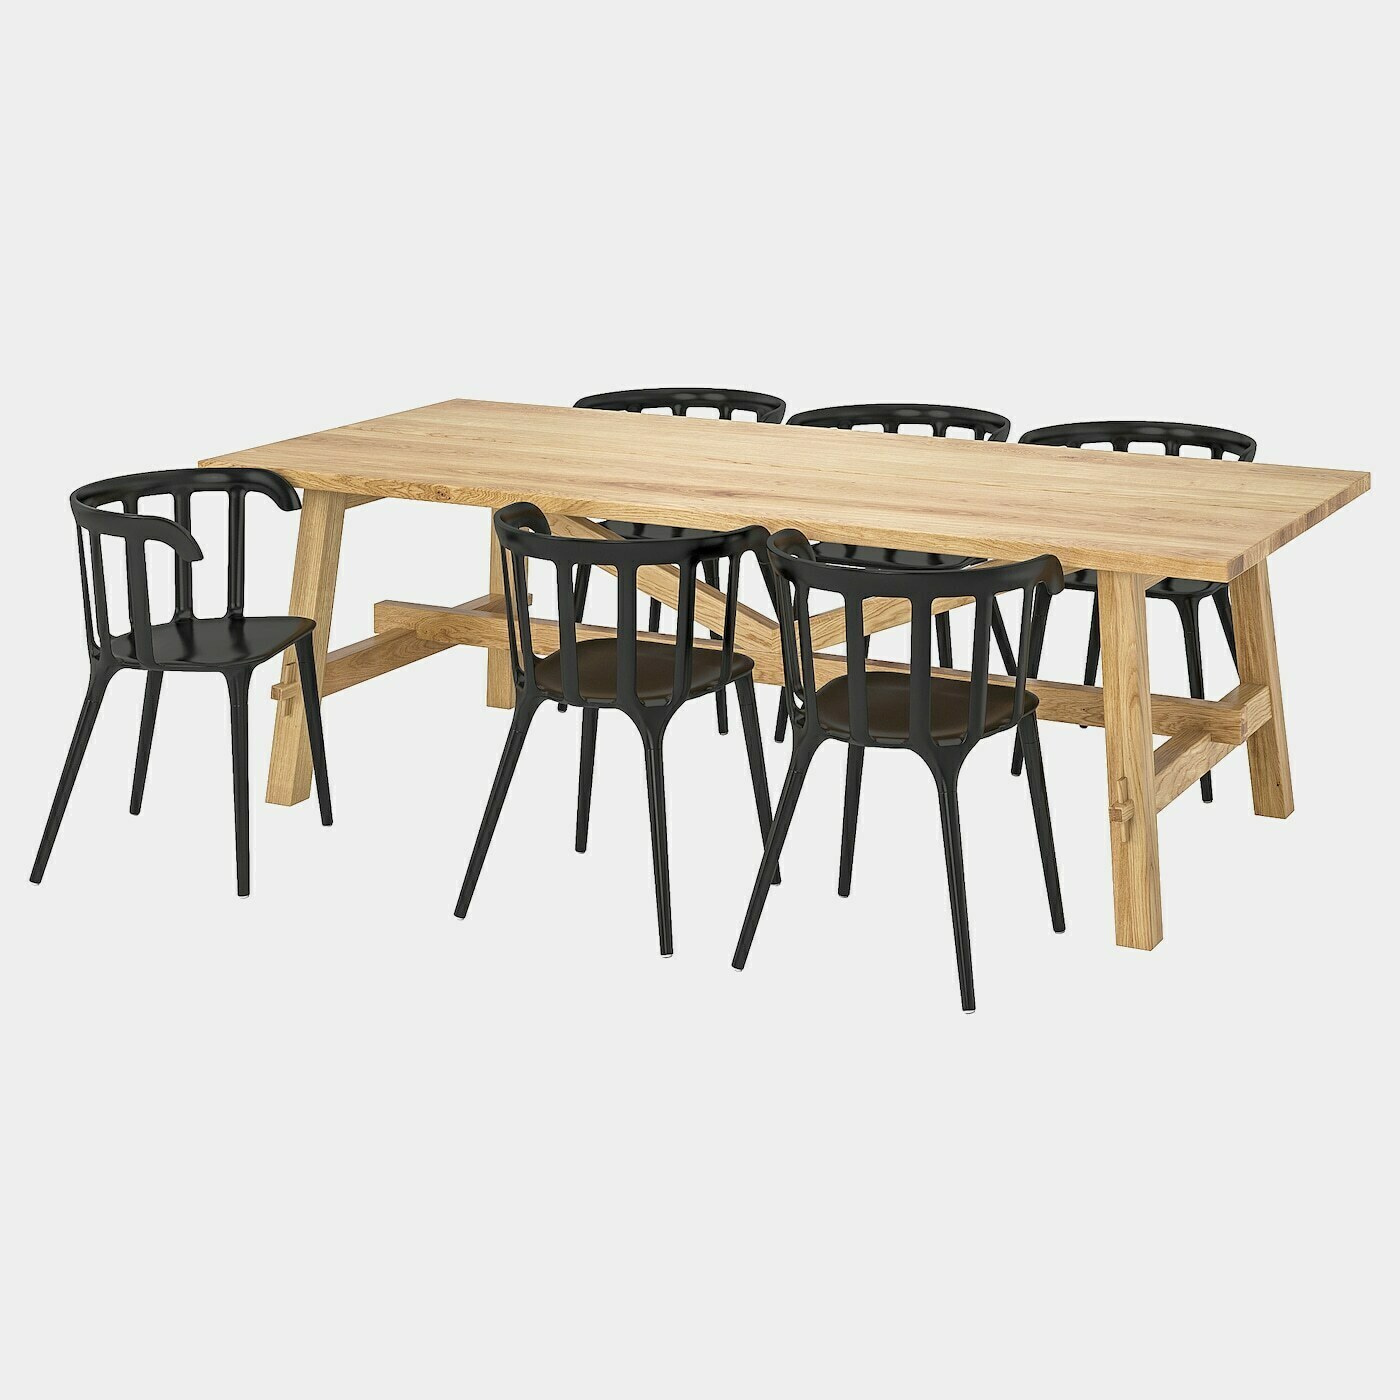 MÖCKELBY / IKEA PS 2012 Tisch und 6 Stühle  - Essplatzgruppe - Möbel Ideen für dein Zuhause von Home Trends. Möbel Trends von Social Media Influencer für dein Skandi Zuhause.